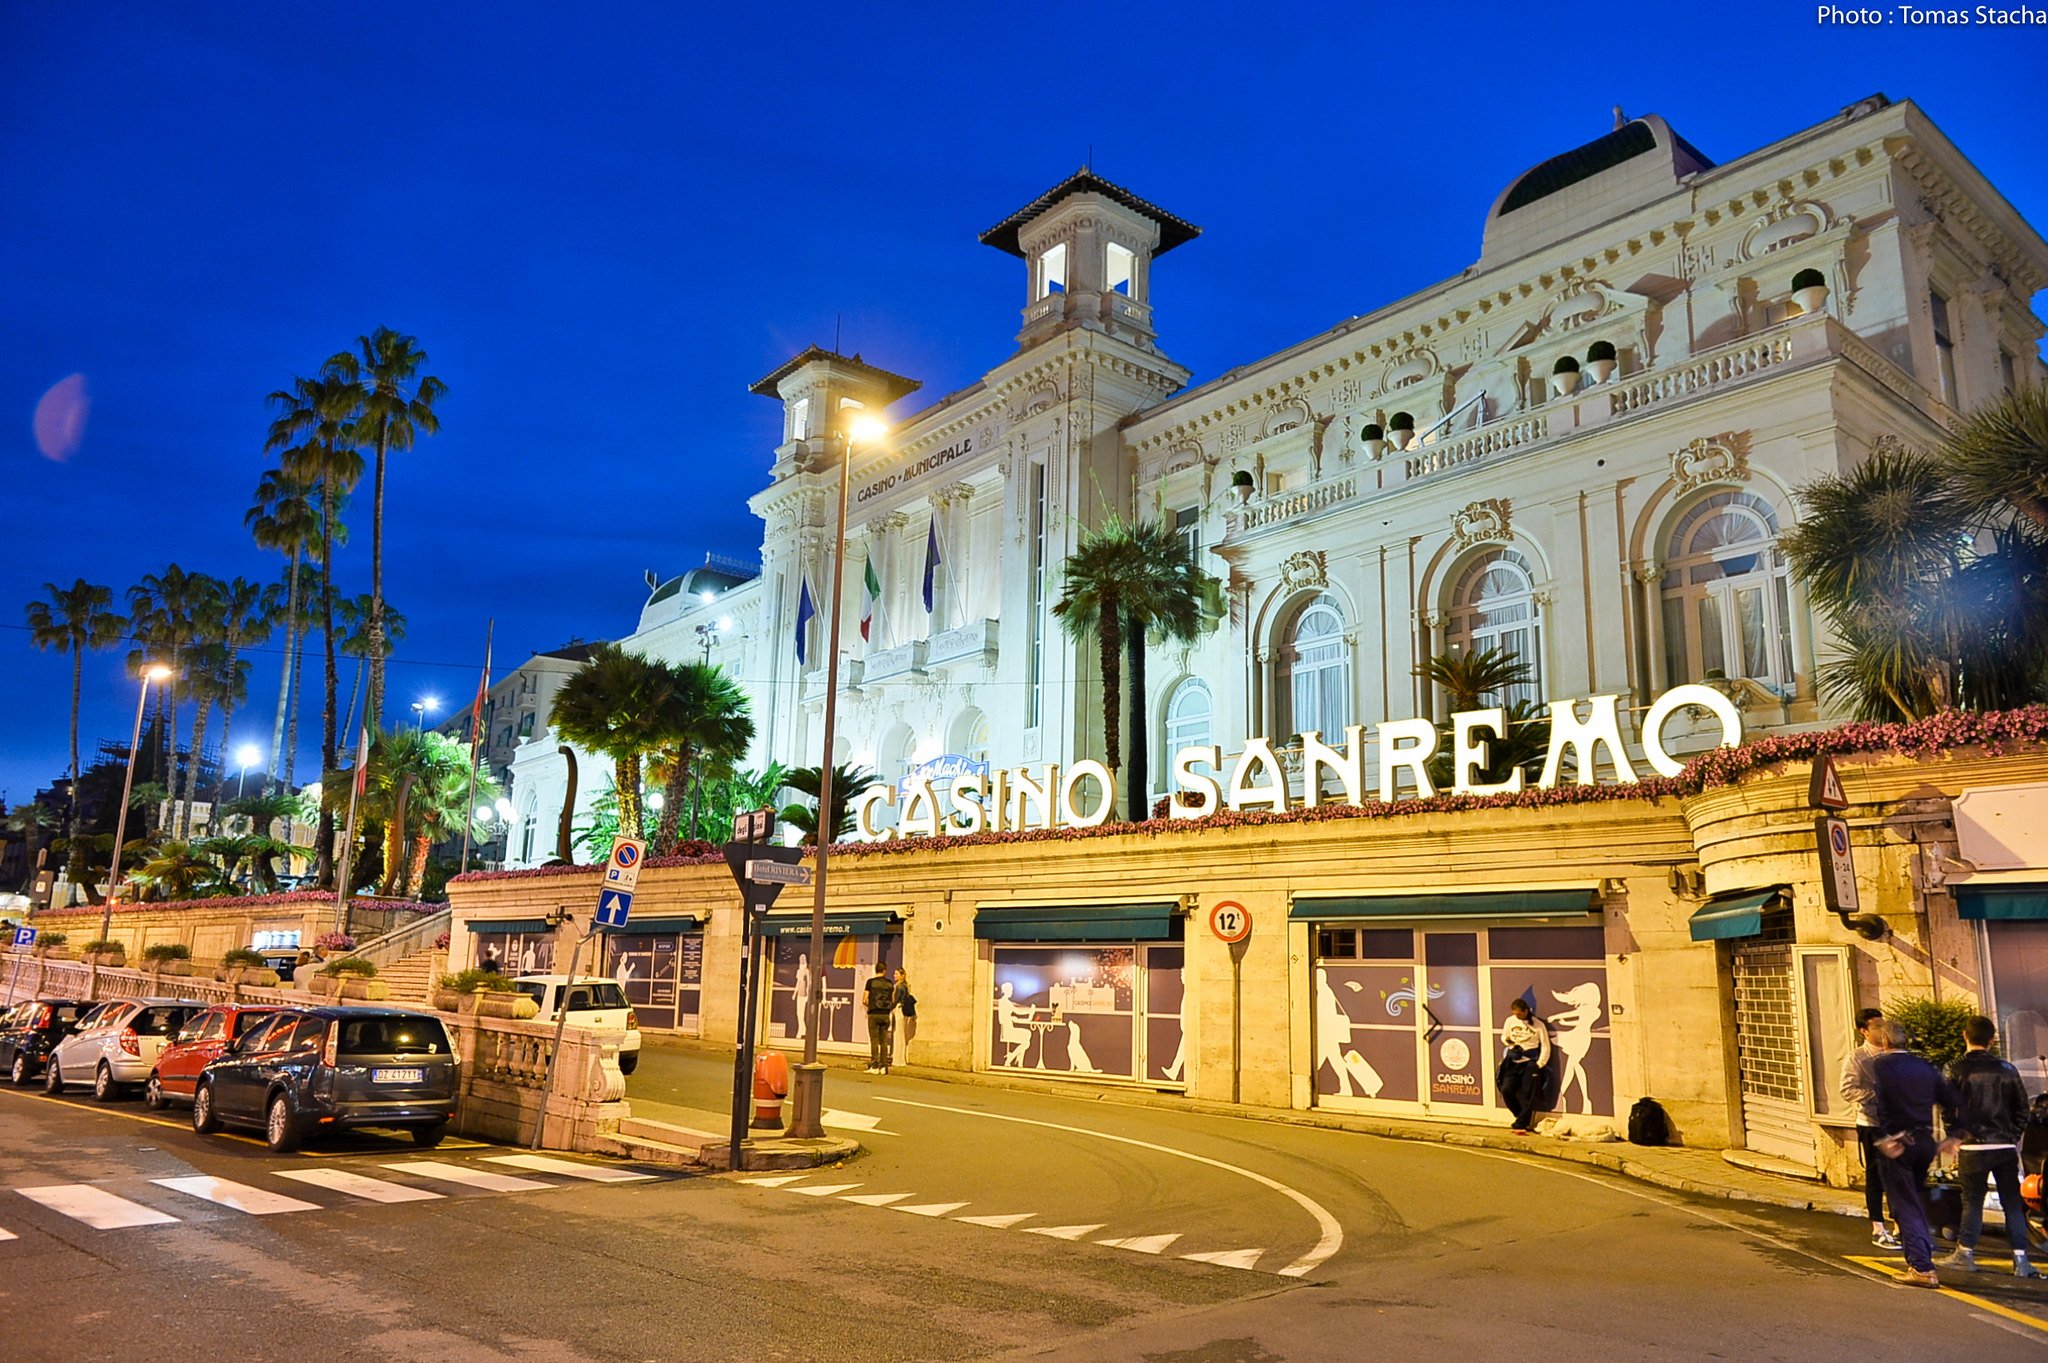 Casino di Sanremo